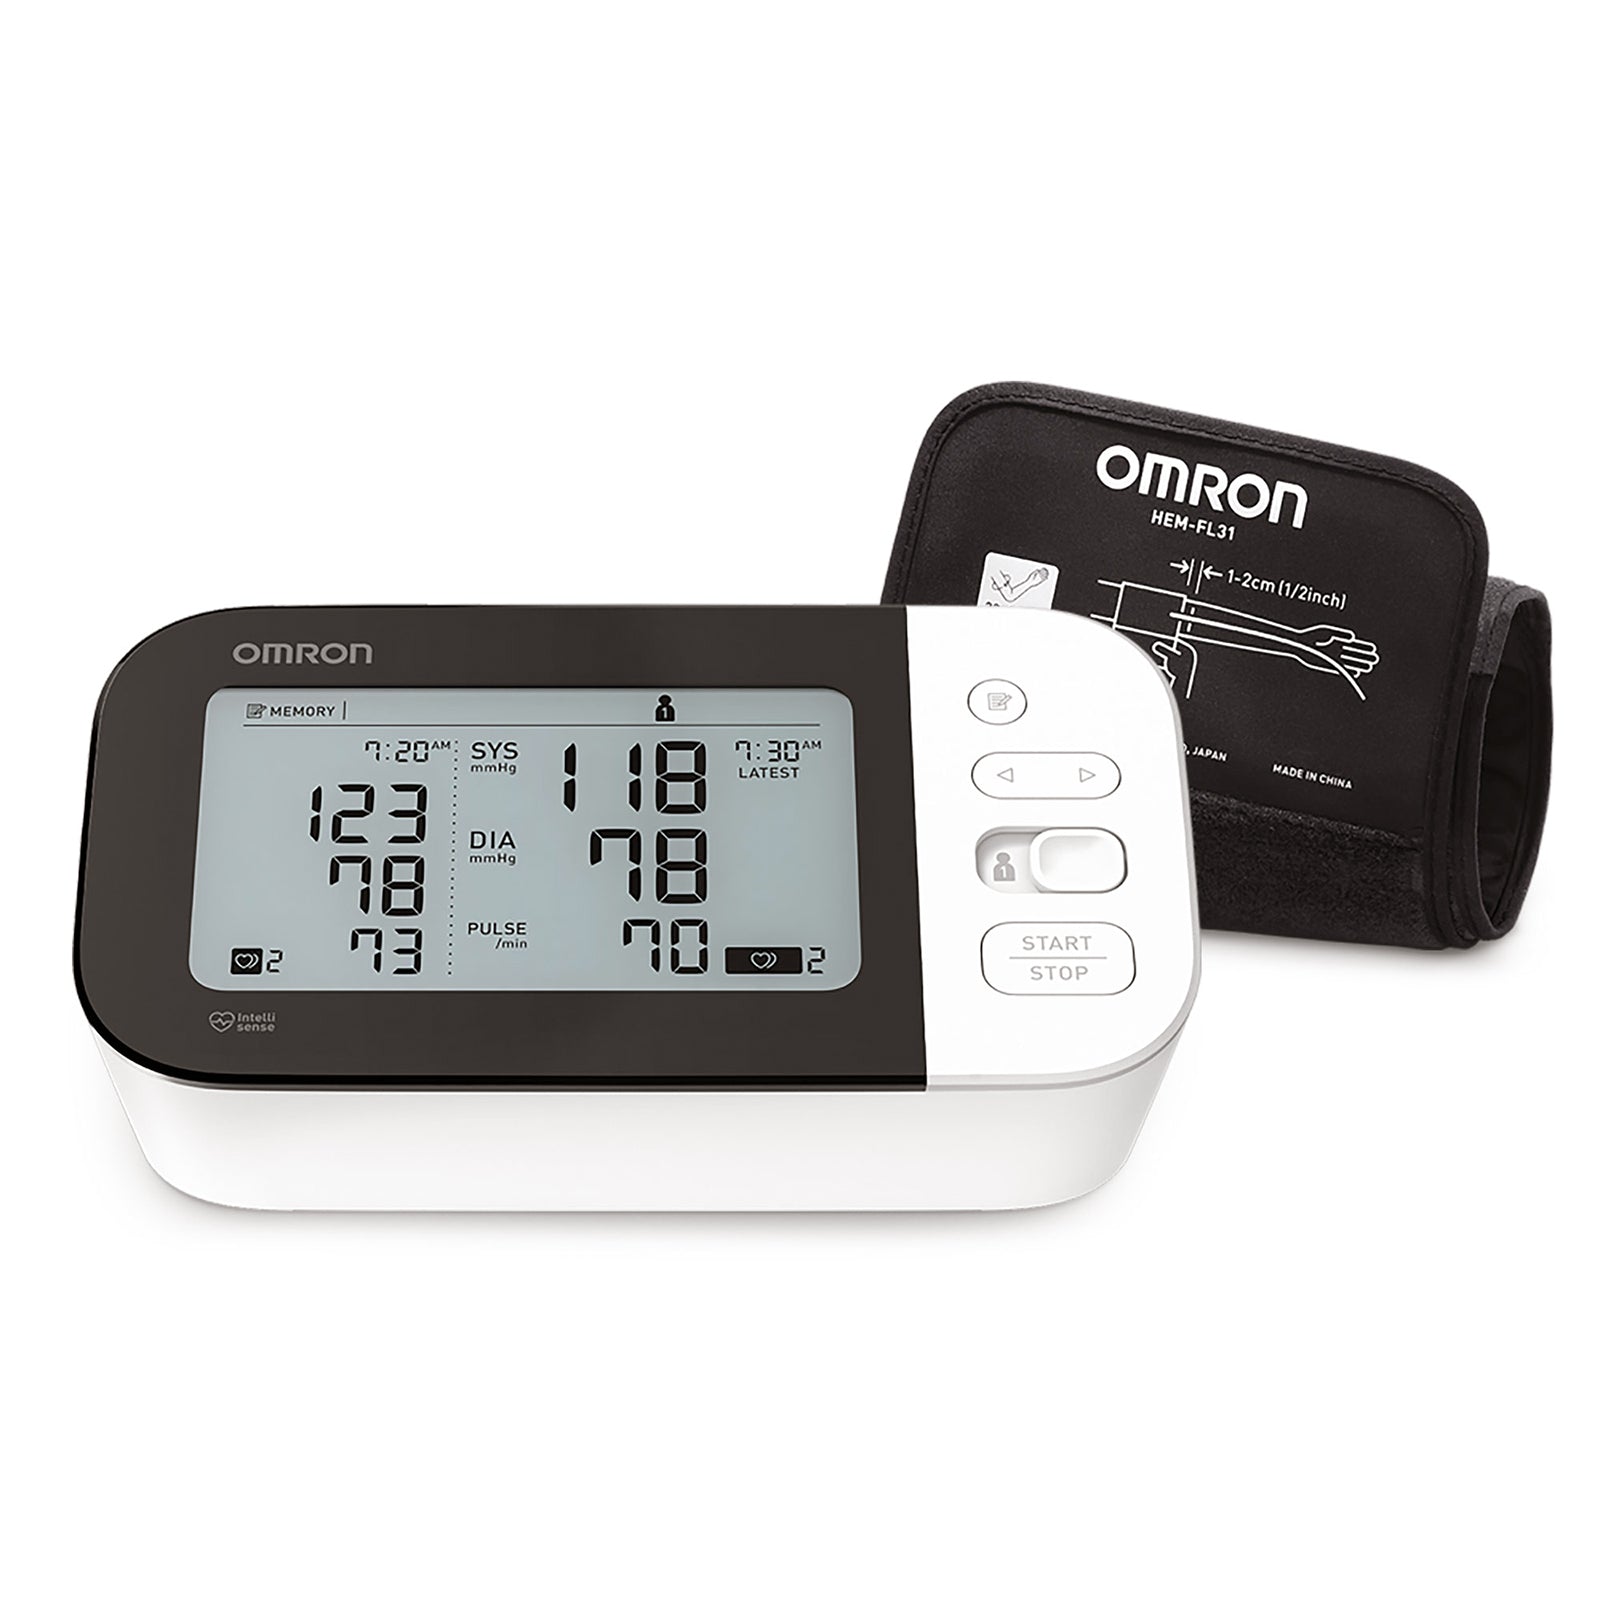 NEW* Omron Wireless Upper Arm Blood Pressure Monitor + EKG